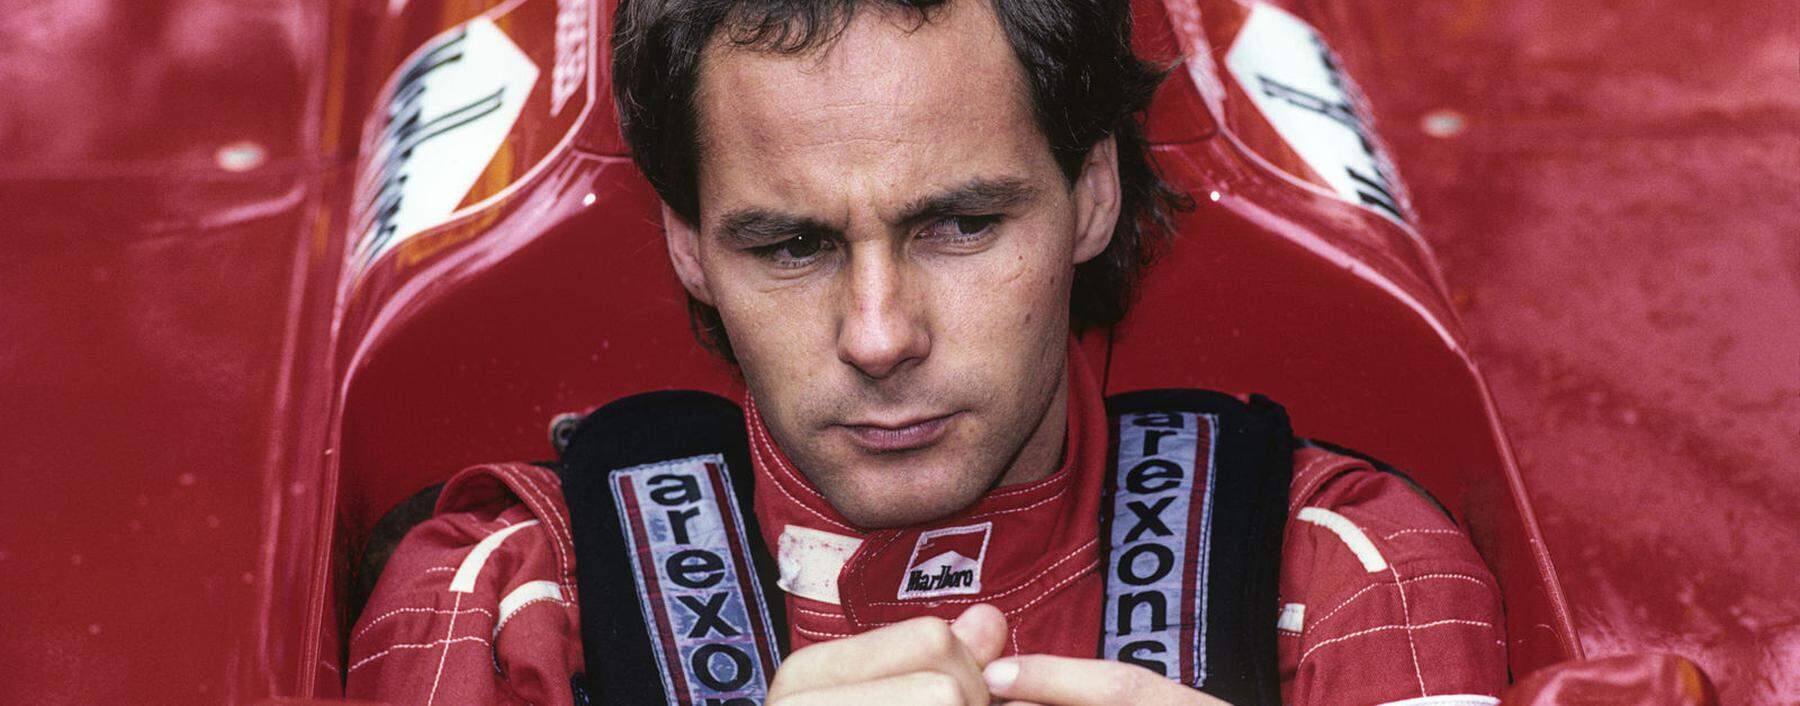 Gerhard Berger, hier in seinem Ferrari von 1988, sieht Parallelen zwischen damals und der heutigen Formel 1.  